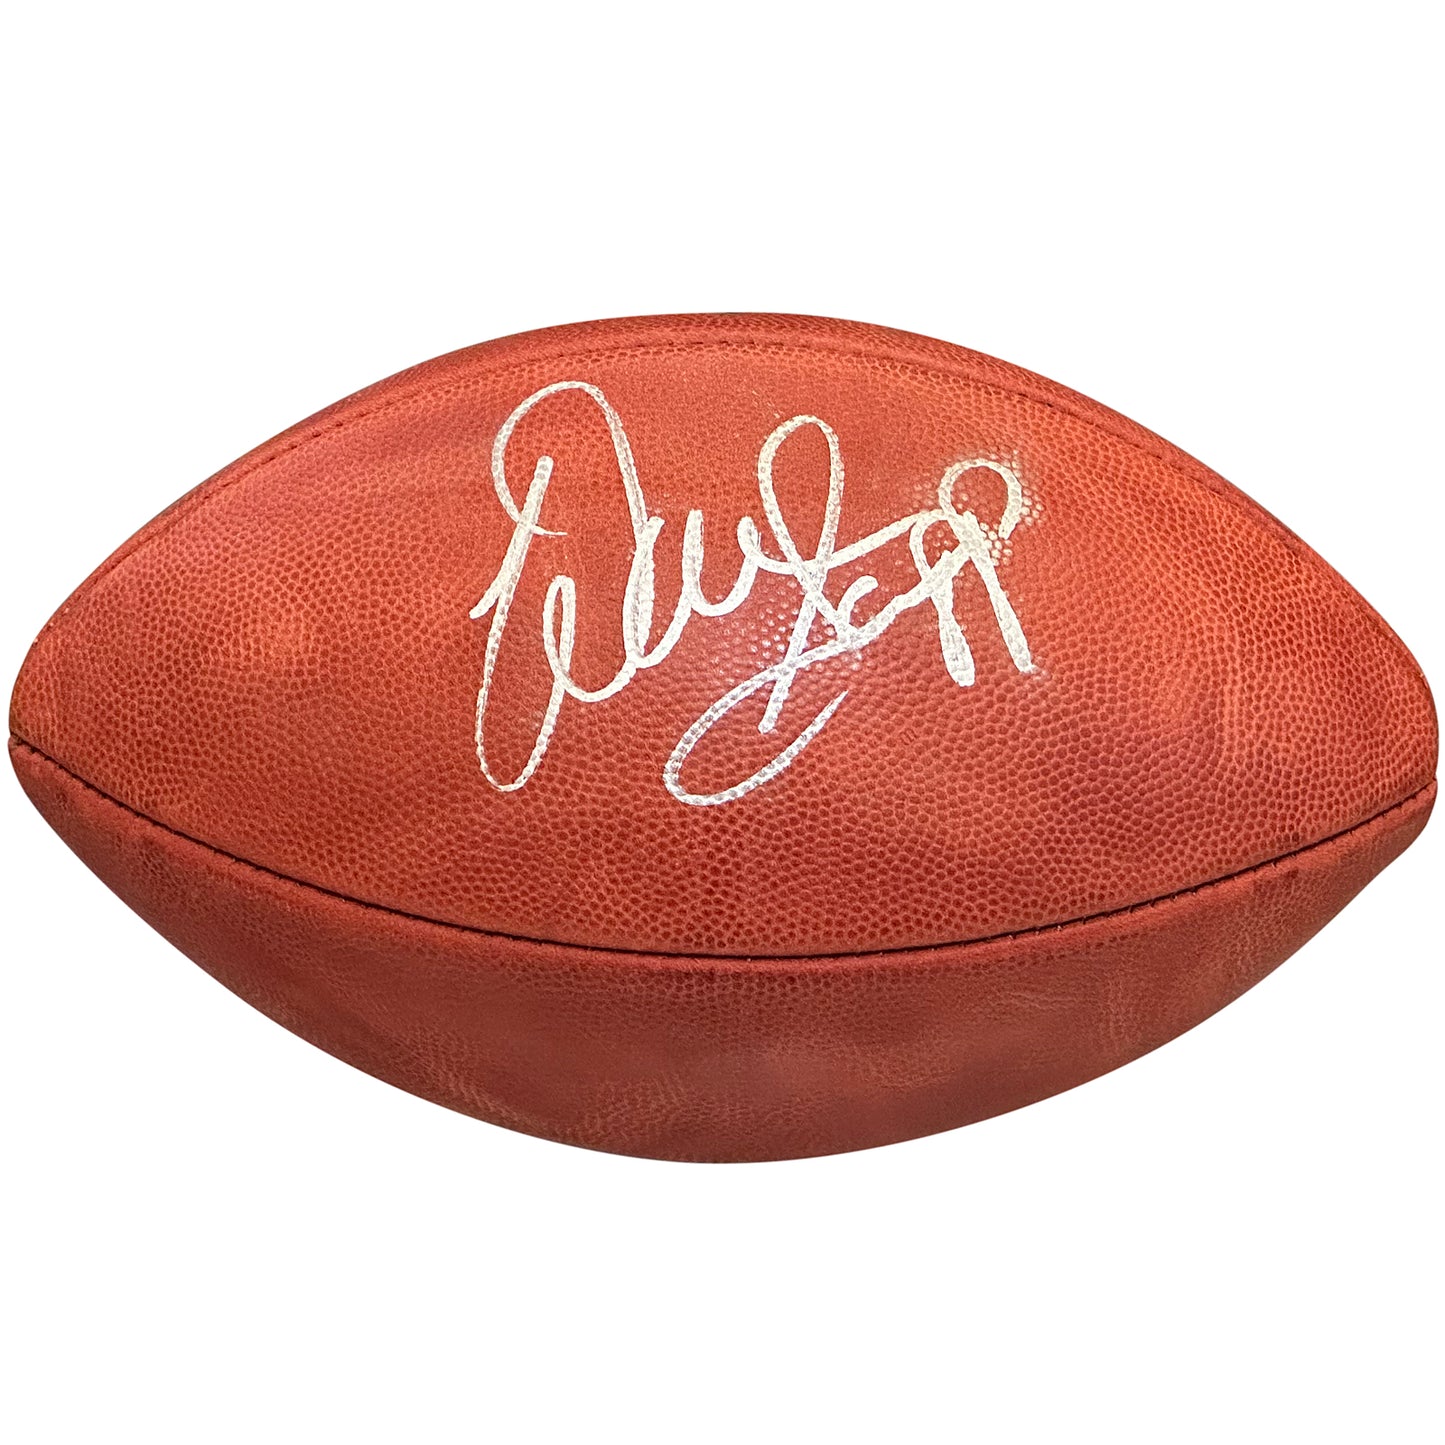 Warren Sapp Autographed NFL The Duke Official Game Football - JSA